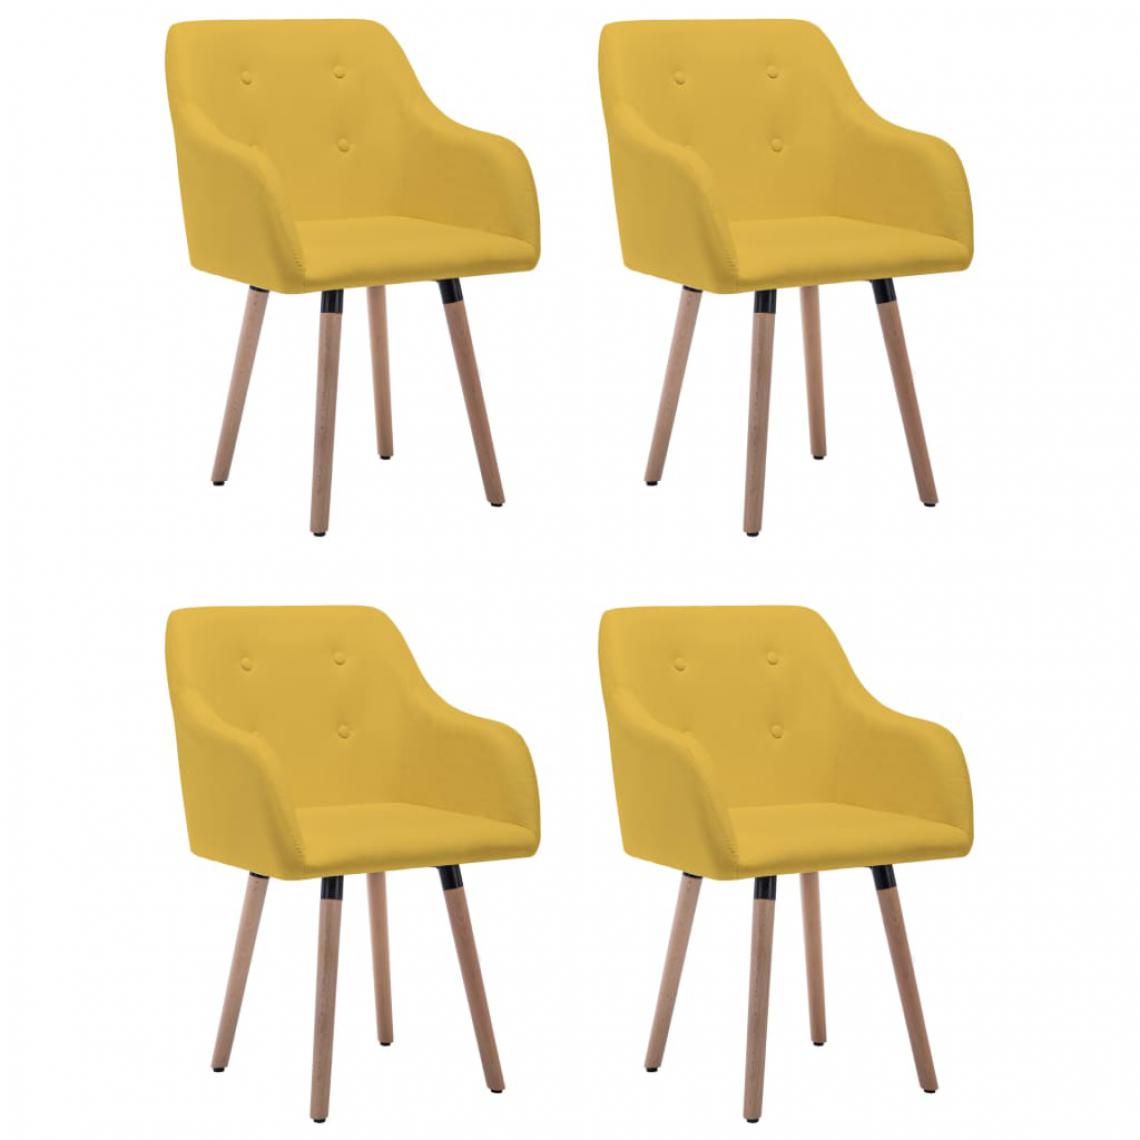 Icaverne - Admirable Fauteuils et chaises edition Malé Chaises de salle à manger 4 pcs Jaune moutarde Tissu - Chaises